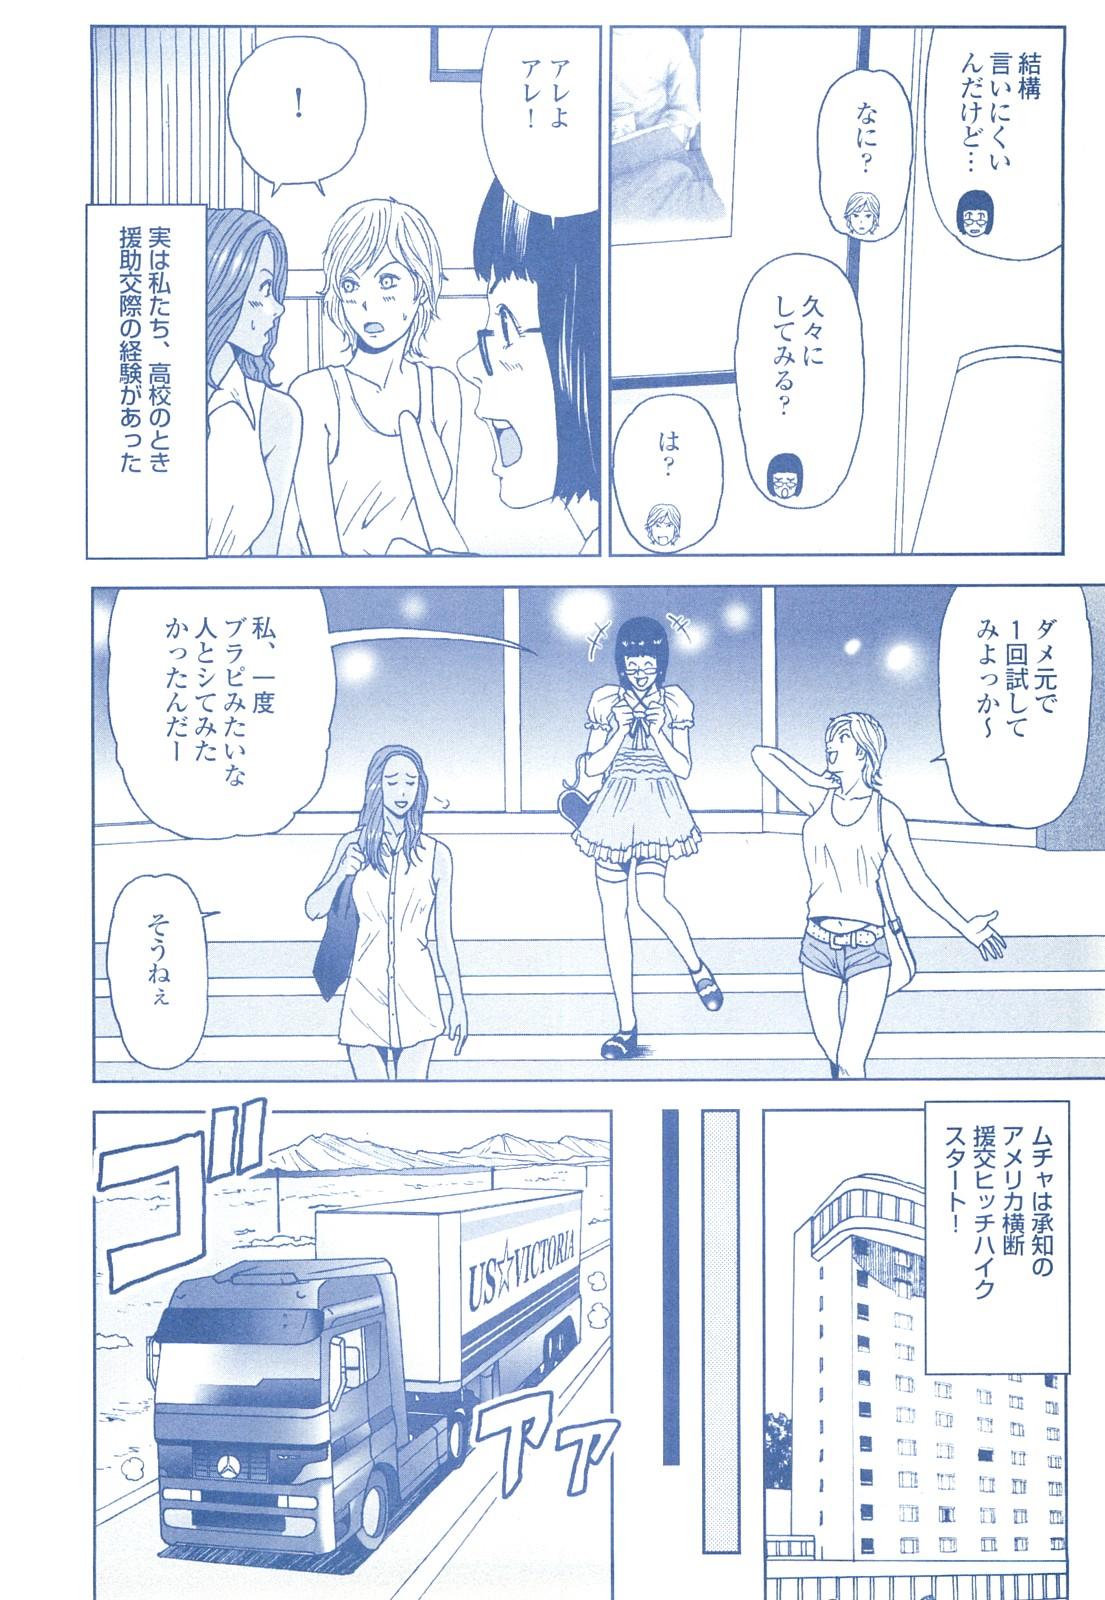 コミック裏モノJAPAN Vol.18 今井のりたつスペシャル号 215